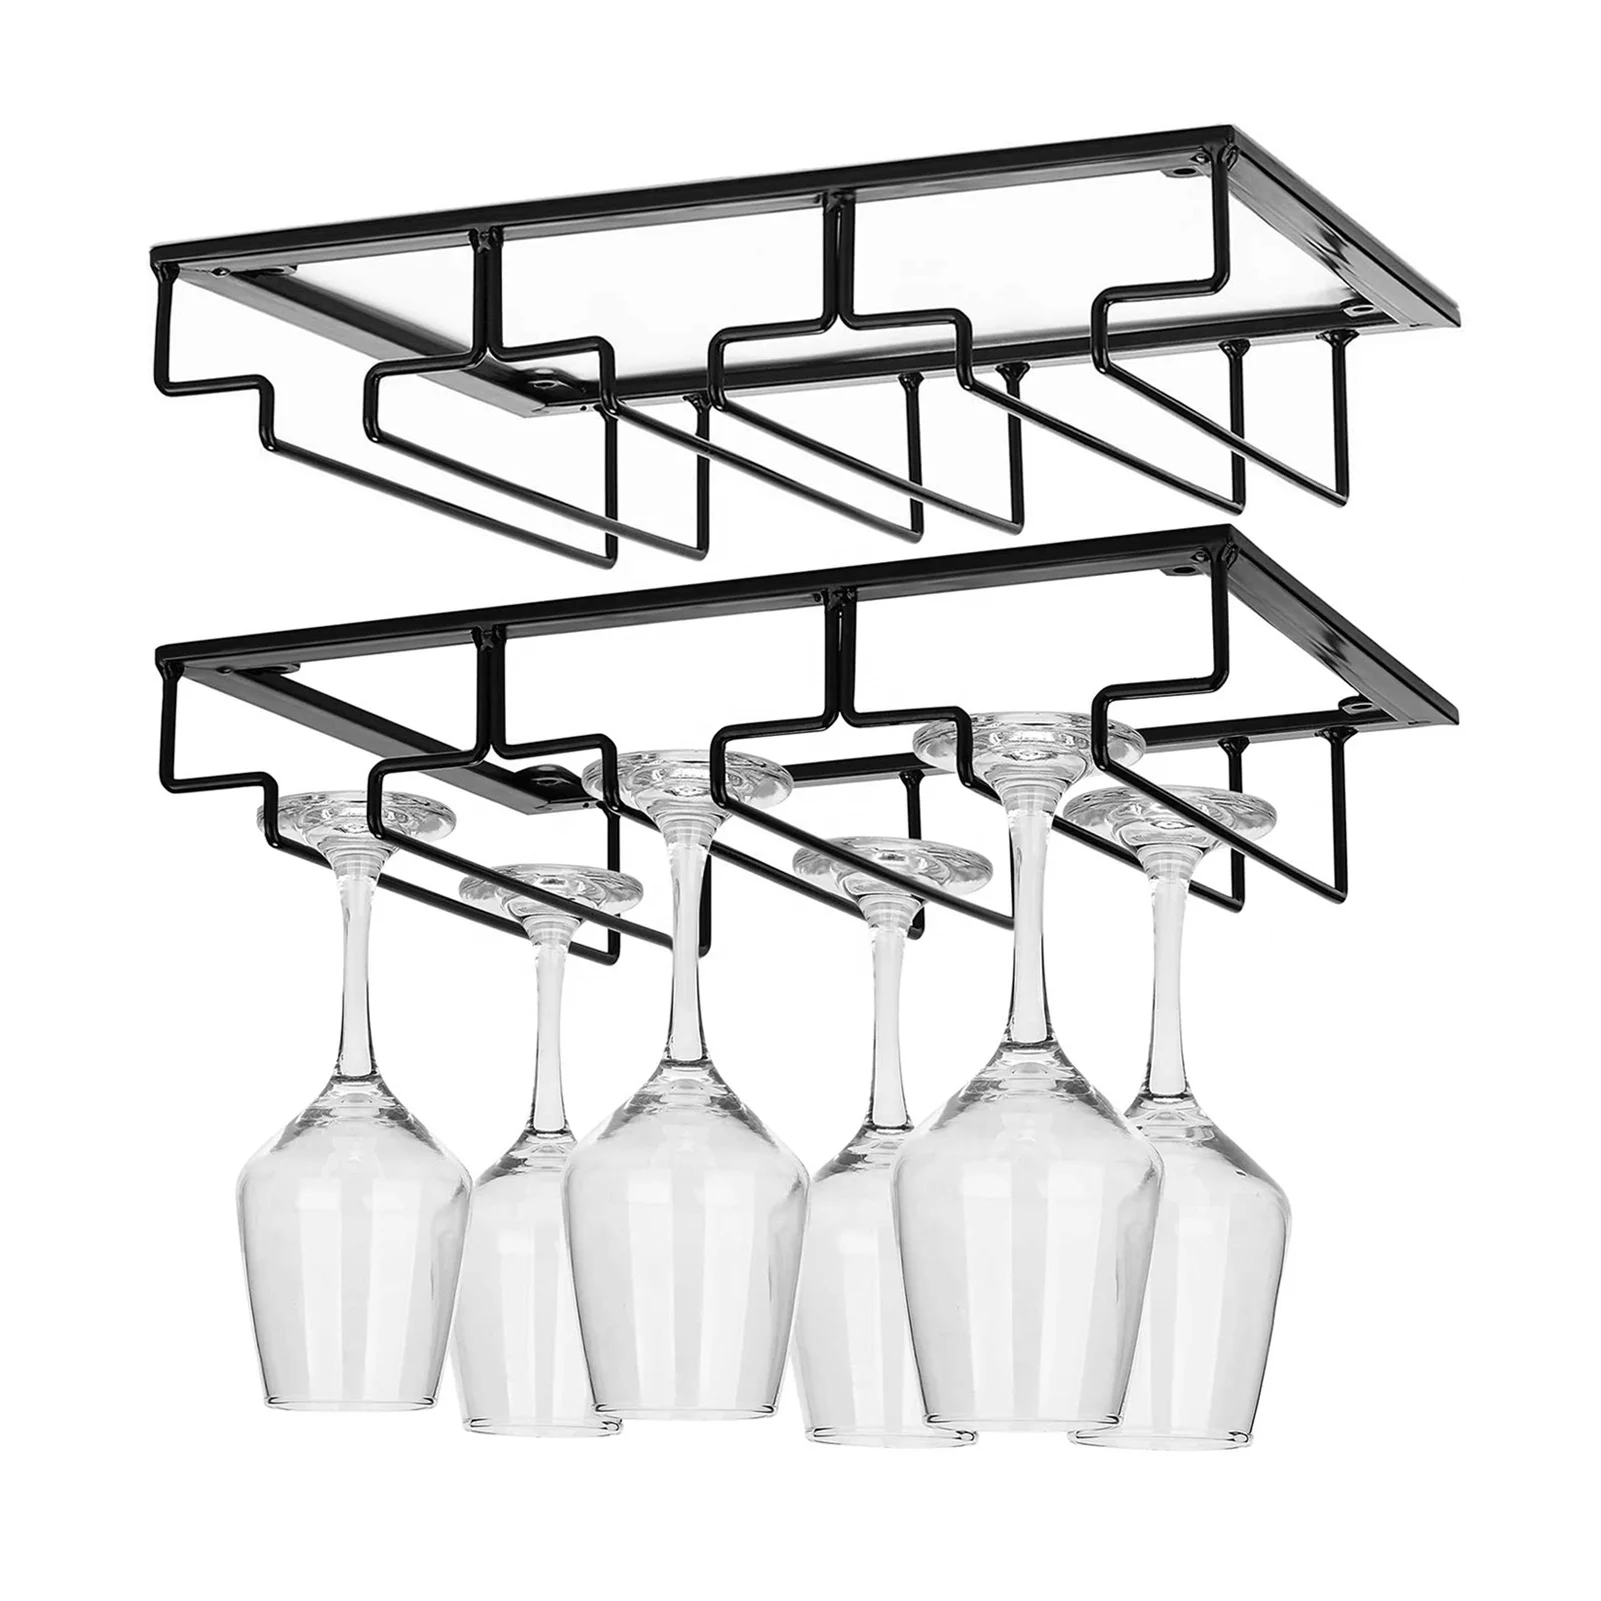 DEFWAY Wine Glass Rack Under Cabinet Stemware Wine Glass Holder Glasses Storage Hanger Metal Organizer for Bar Kitchen Bronze 